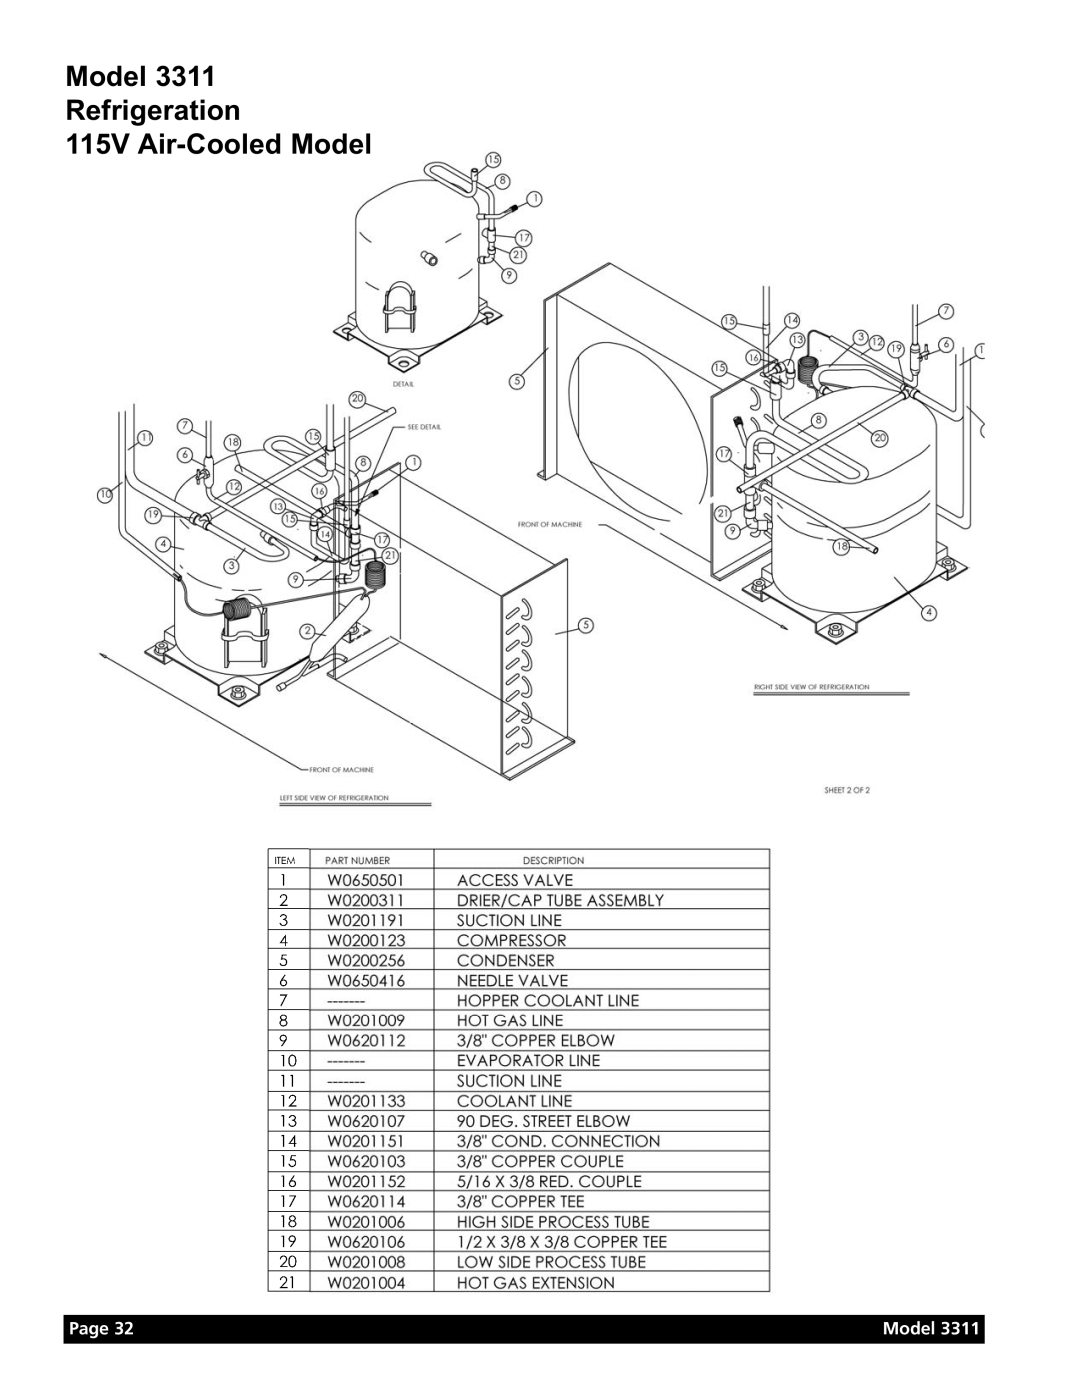 Grindmaster Model 3311 manual Model Refrigeration 115V Air-Cooled Model, Page 